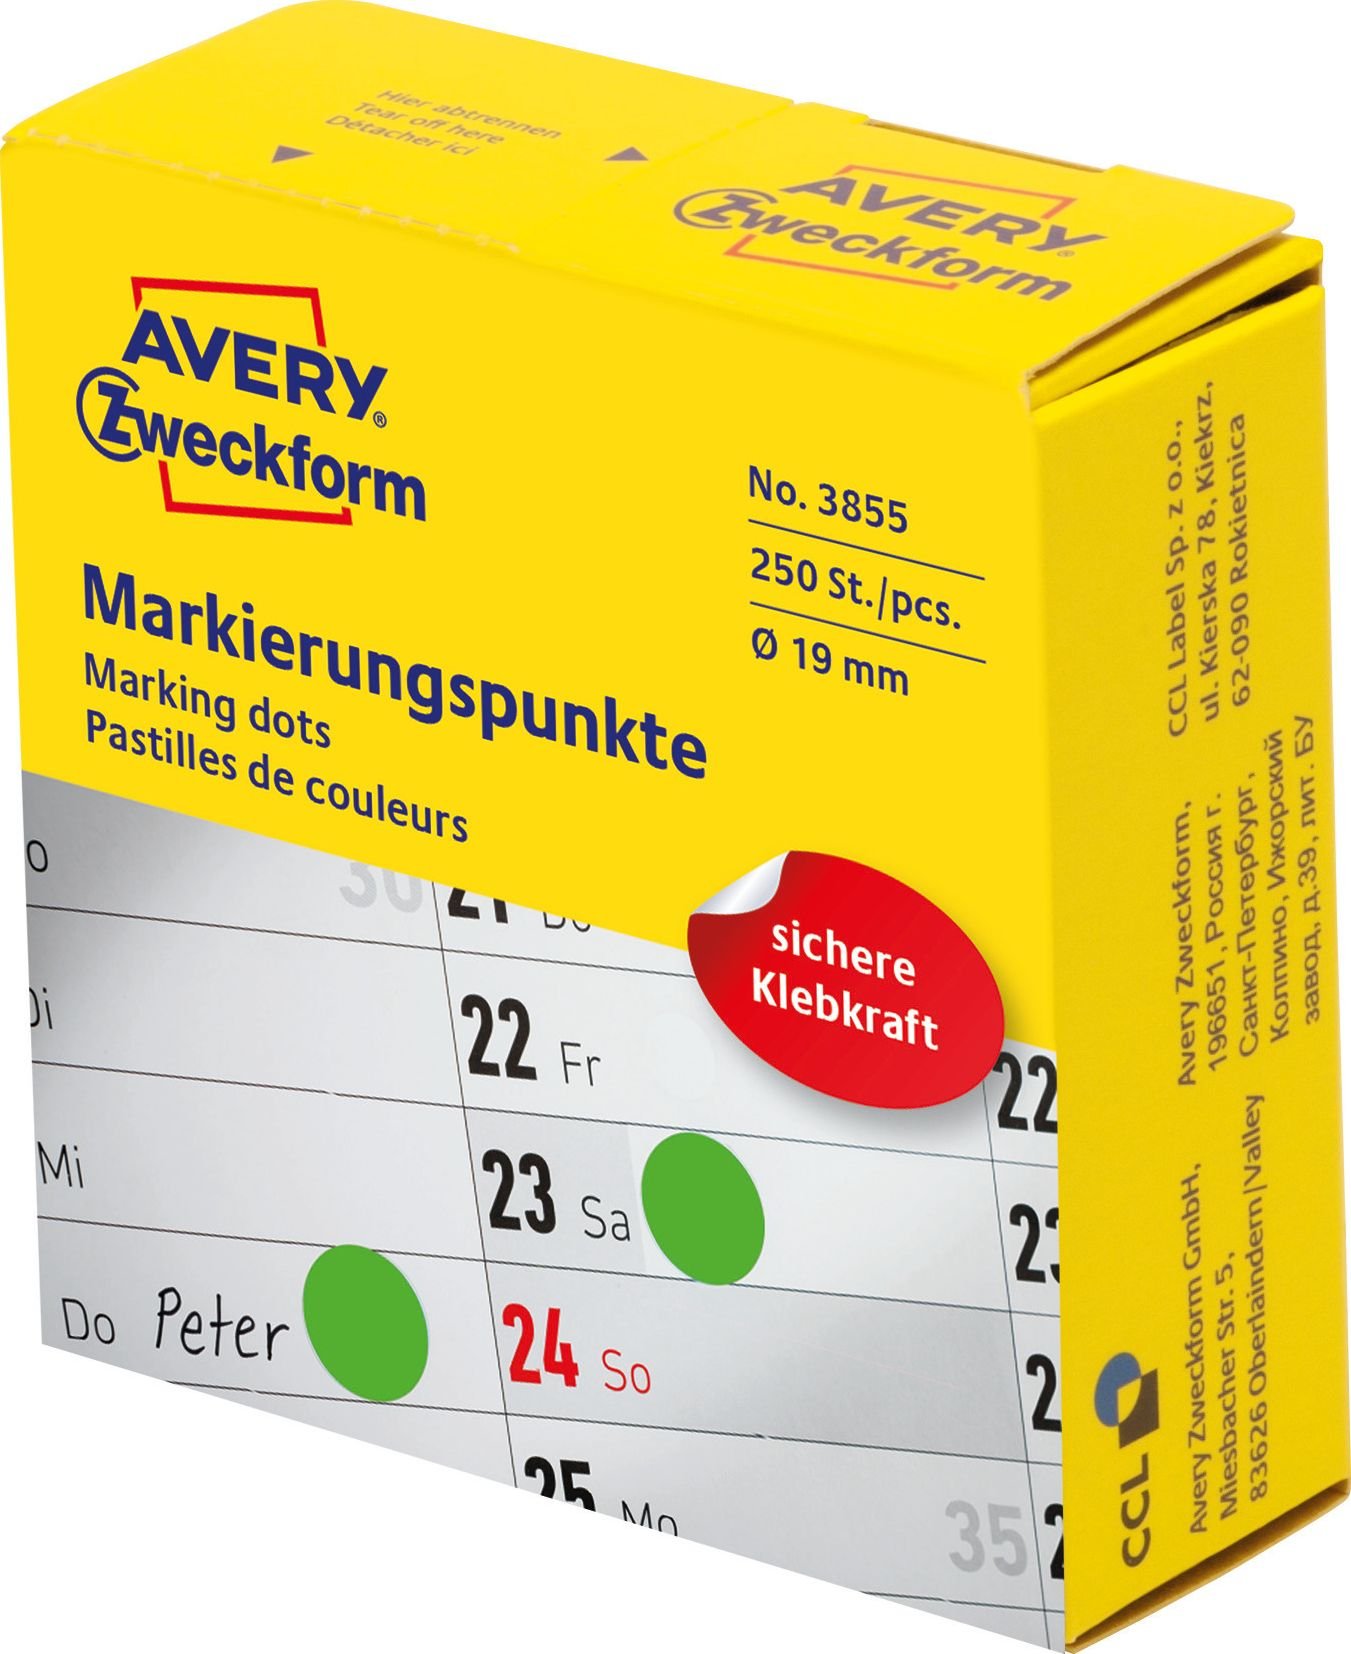 Cercuri de marcare Avery Zweckform în distribuitor Avery Zweckform, 250 buc/rolă, Ø19 mm, Verde, VERDE